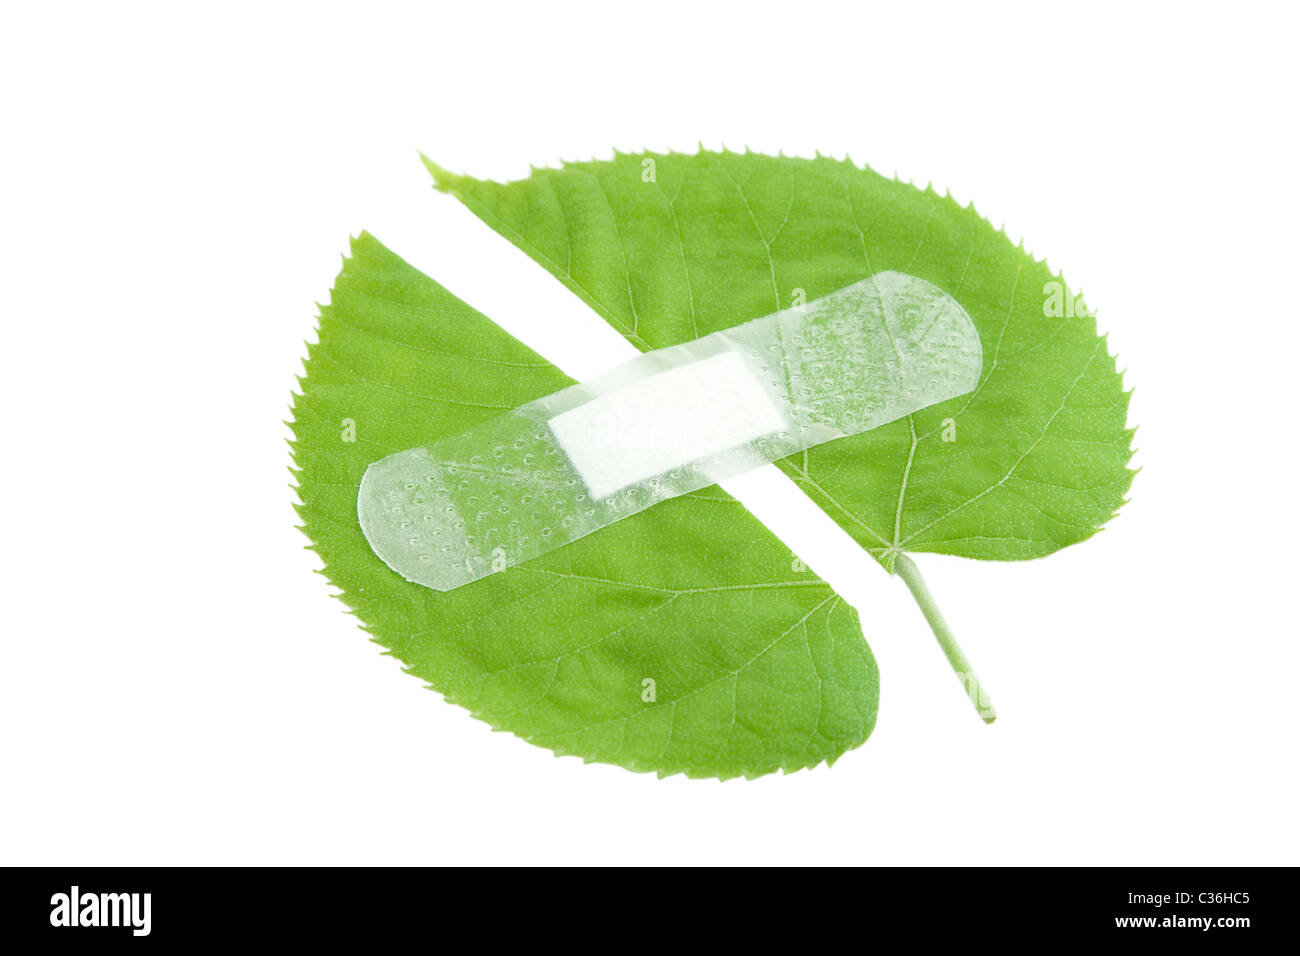 La protection de l'environnement, la feuille verte bandée avec tache blanche Banque D'Images